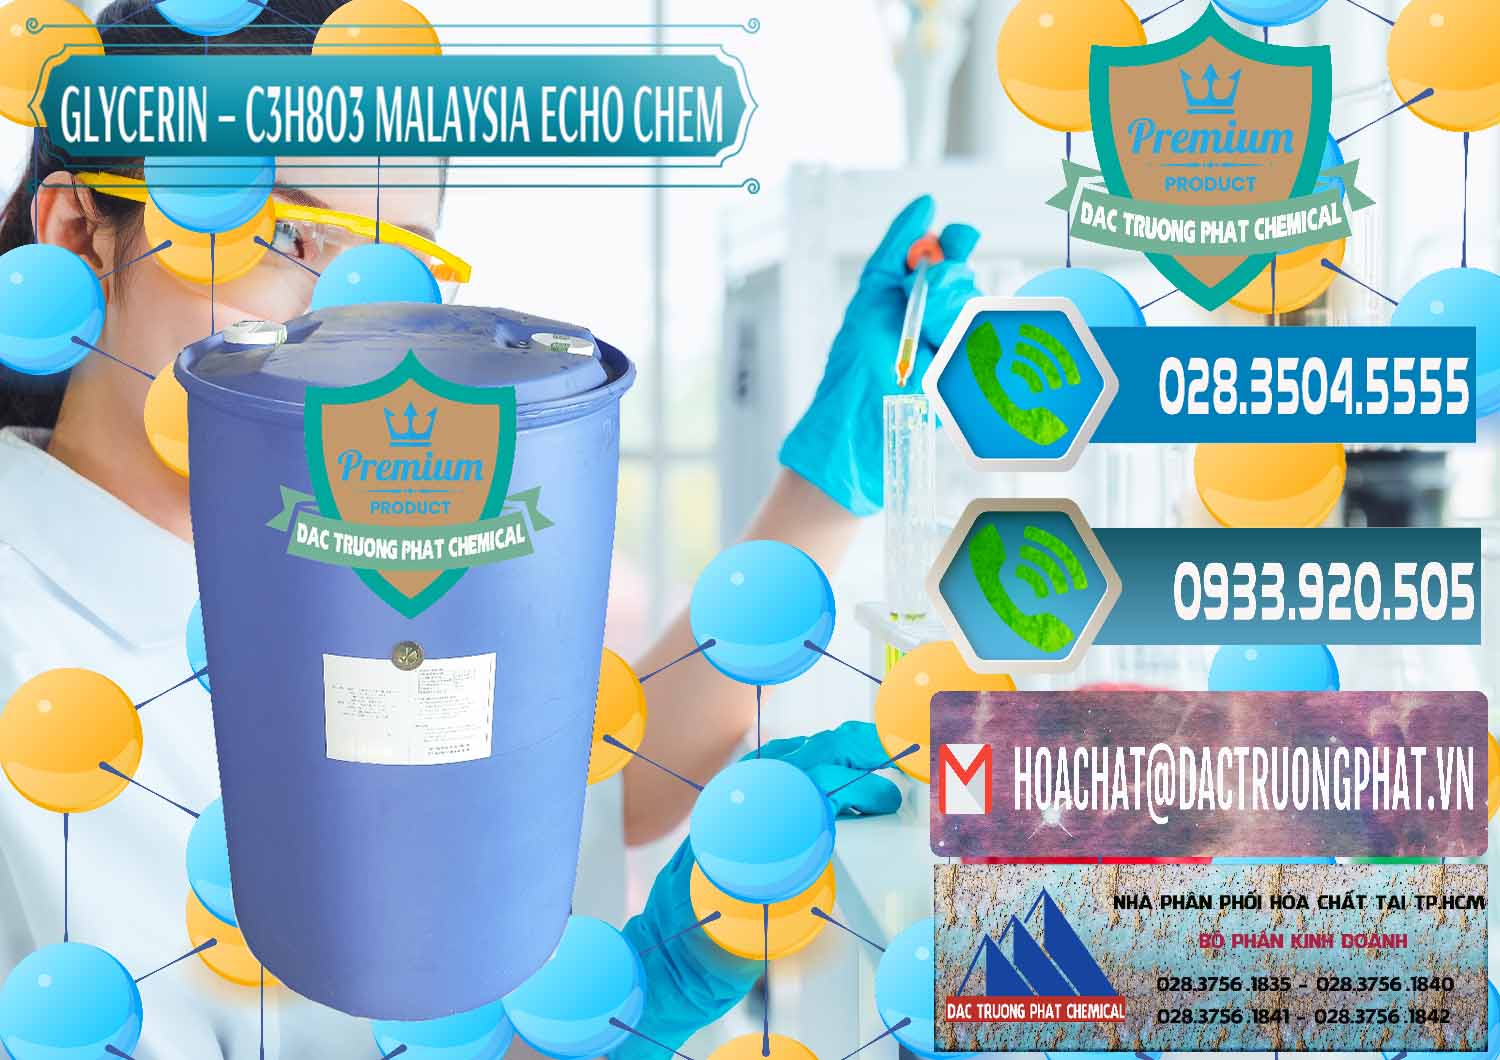 Nơi bán Glycerin – C3H8O3 99.7% Echo Chem Malaysia - 0273 - Công ty phân phối - nhập khẩu hóa chất tại TP.HCM - congtyhoachat.net